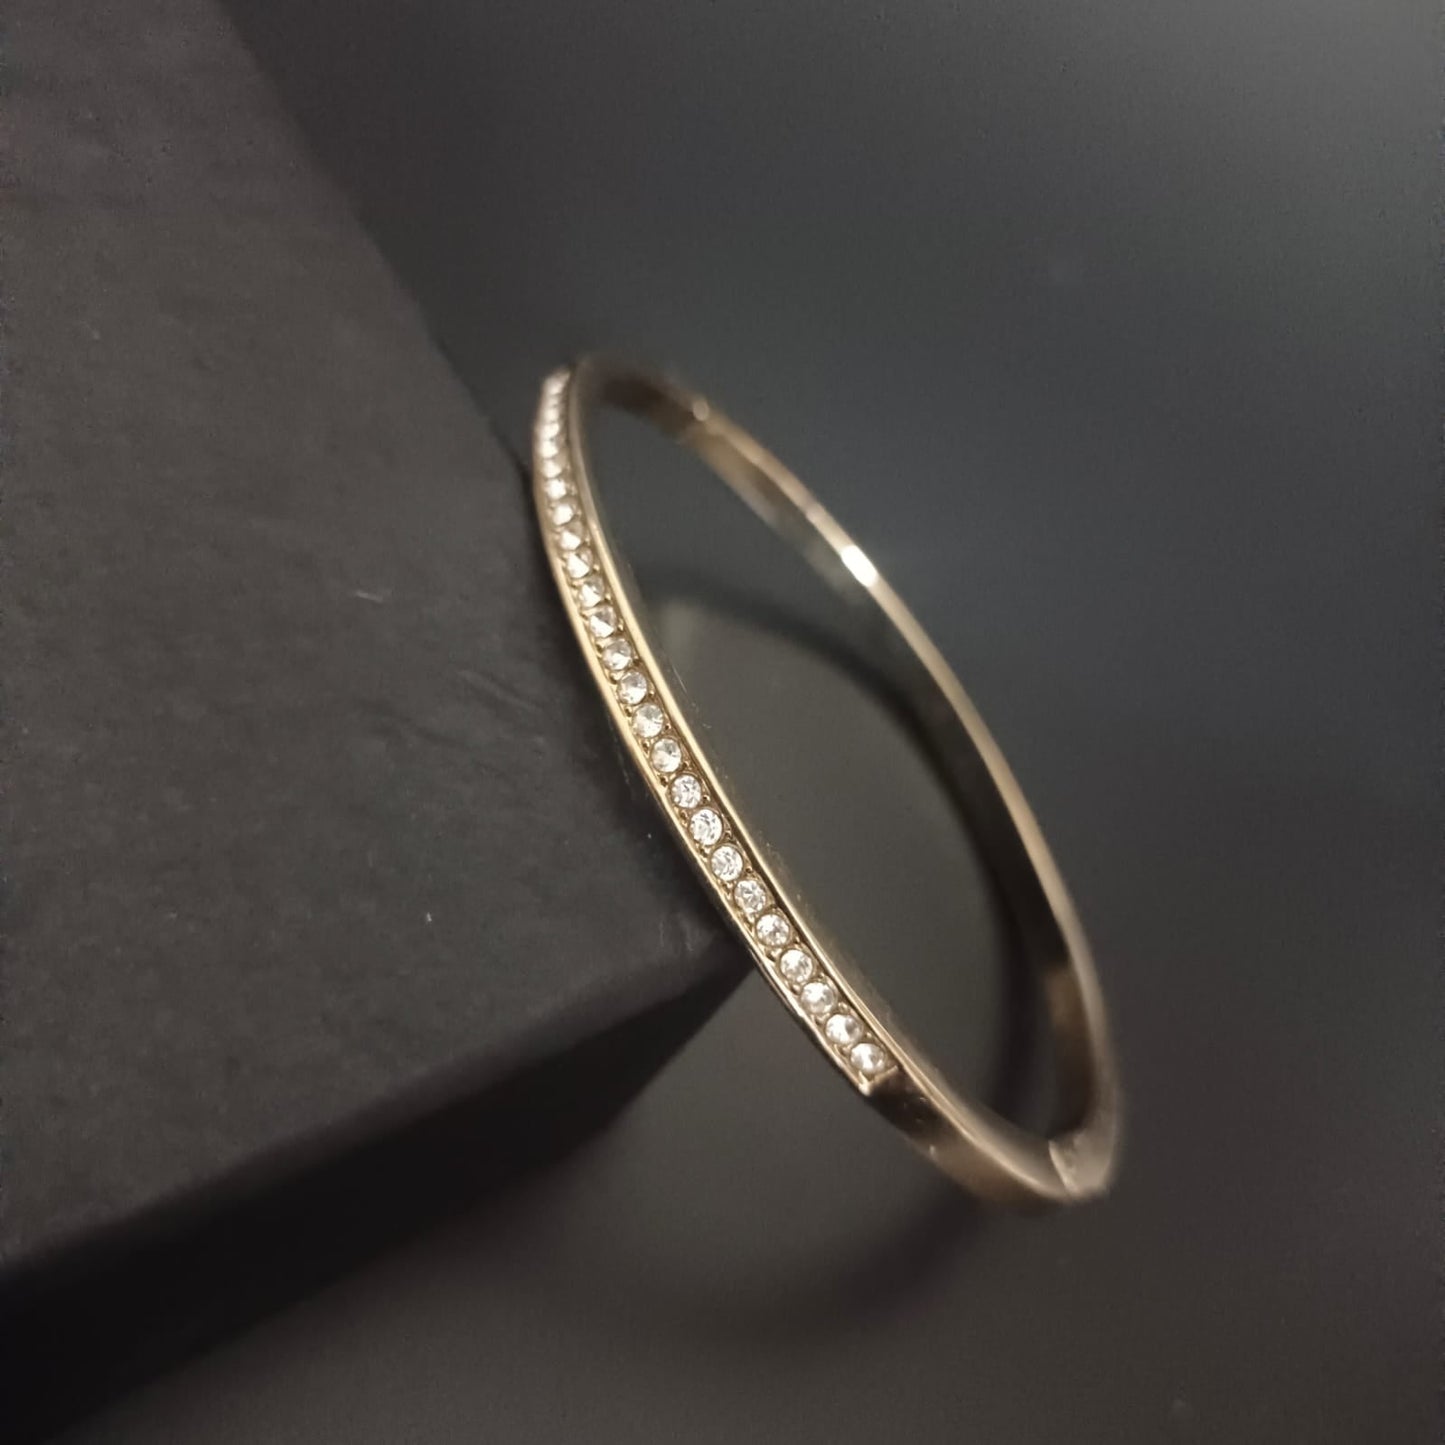 New Diamond Gold Bangle Design Kada Bracelet For Women and Girl-Sunglassesmart